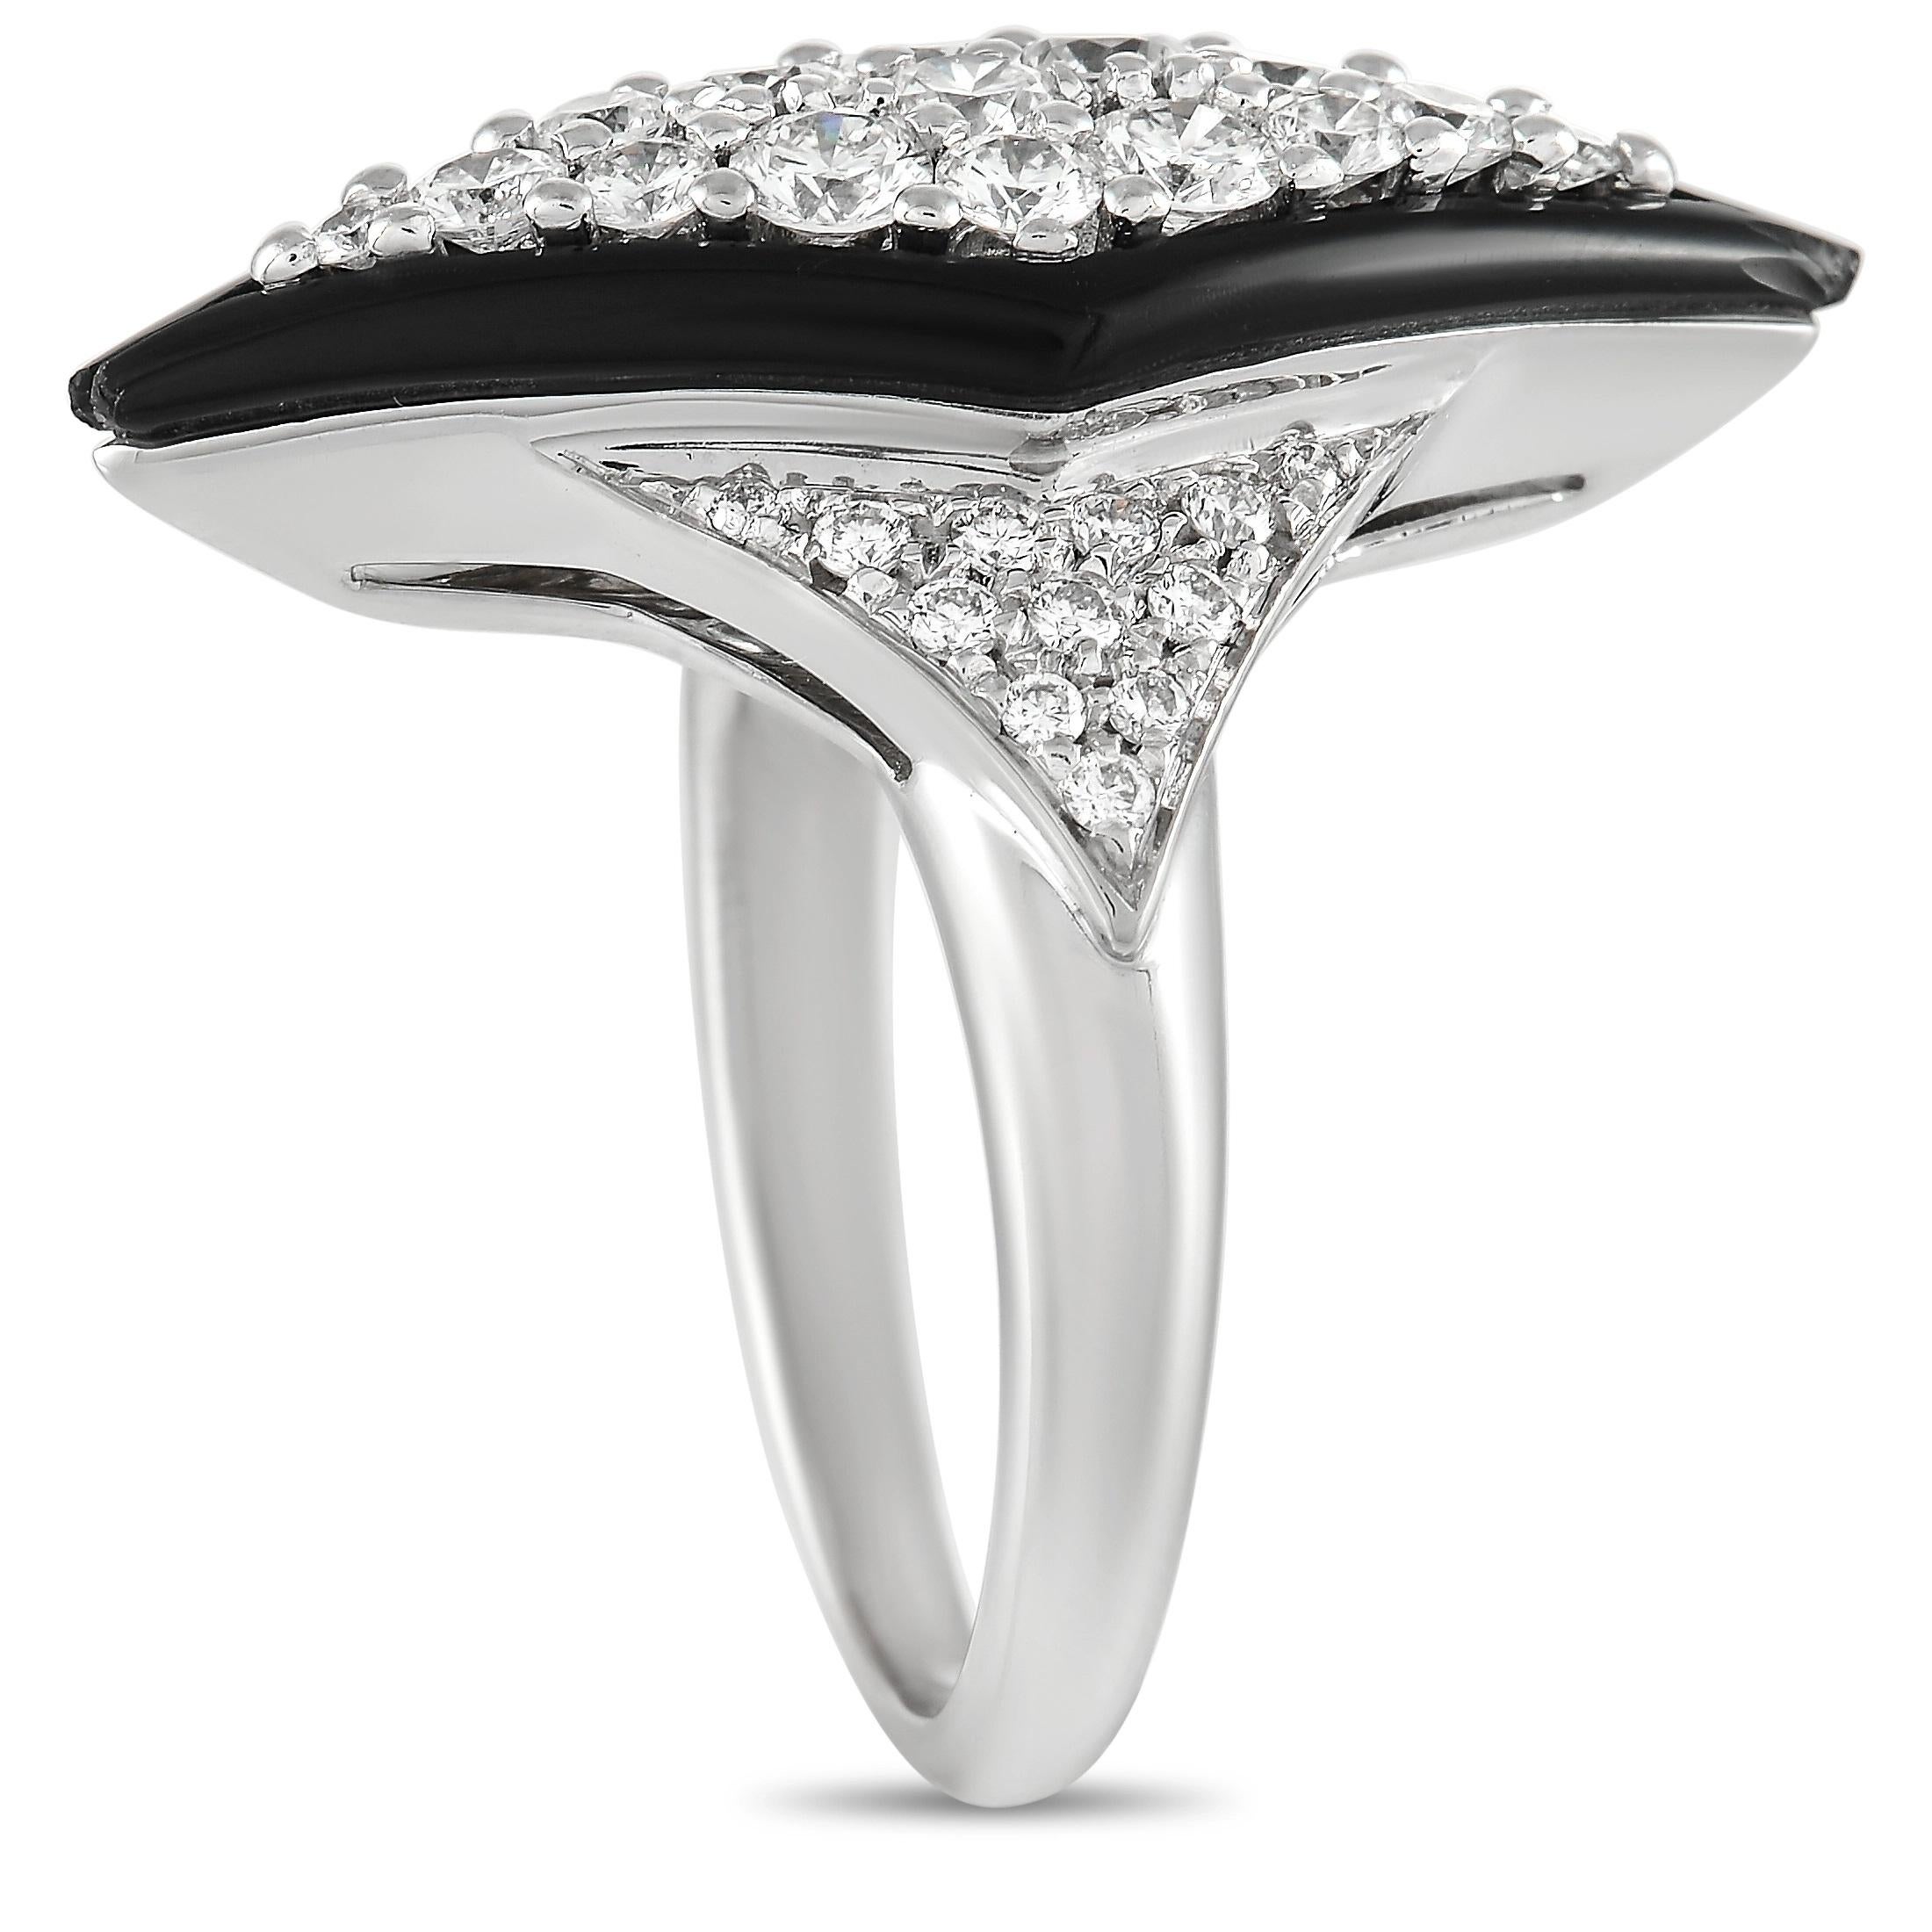 Dieser einzigartige Picchiotti Ring aus 18 Karat Weißgold mit 1,07 Karat Diamanten und Onyx ist ein echter Blickfang. Das dicke, abgerundete Band ist aus glattem 18-karätigem Weißgold gefertigt und mit 1,07 Karat Diamanten im Rundschliff in